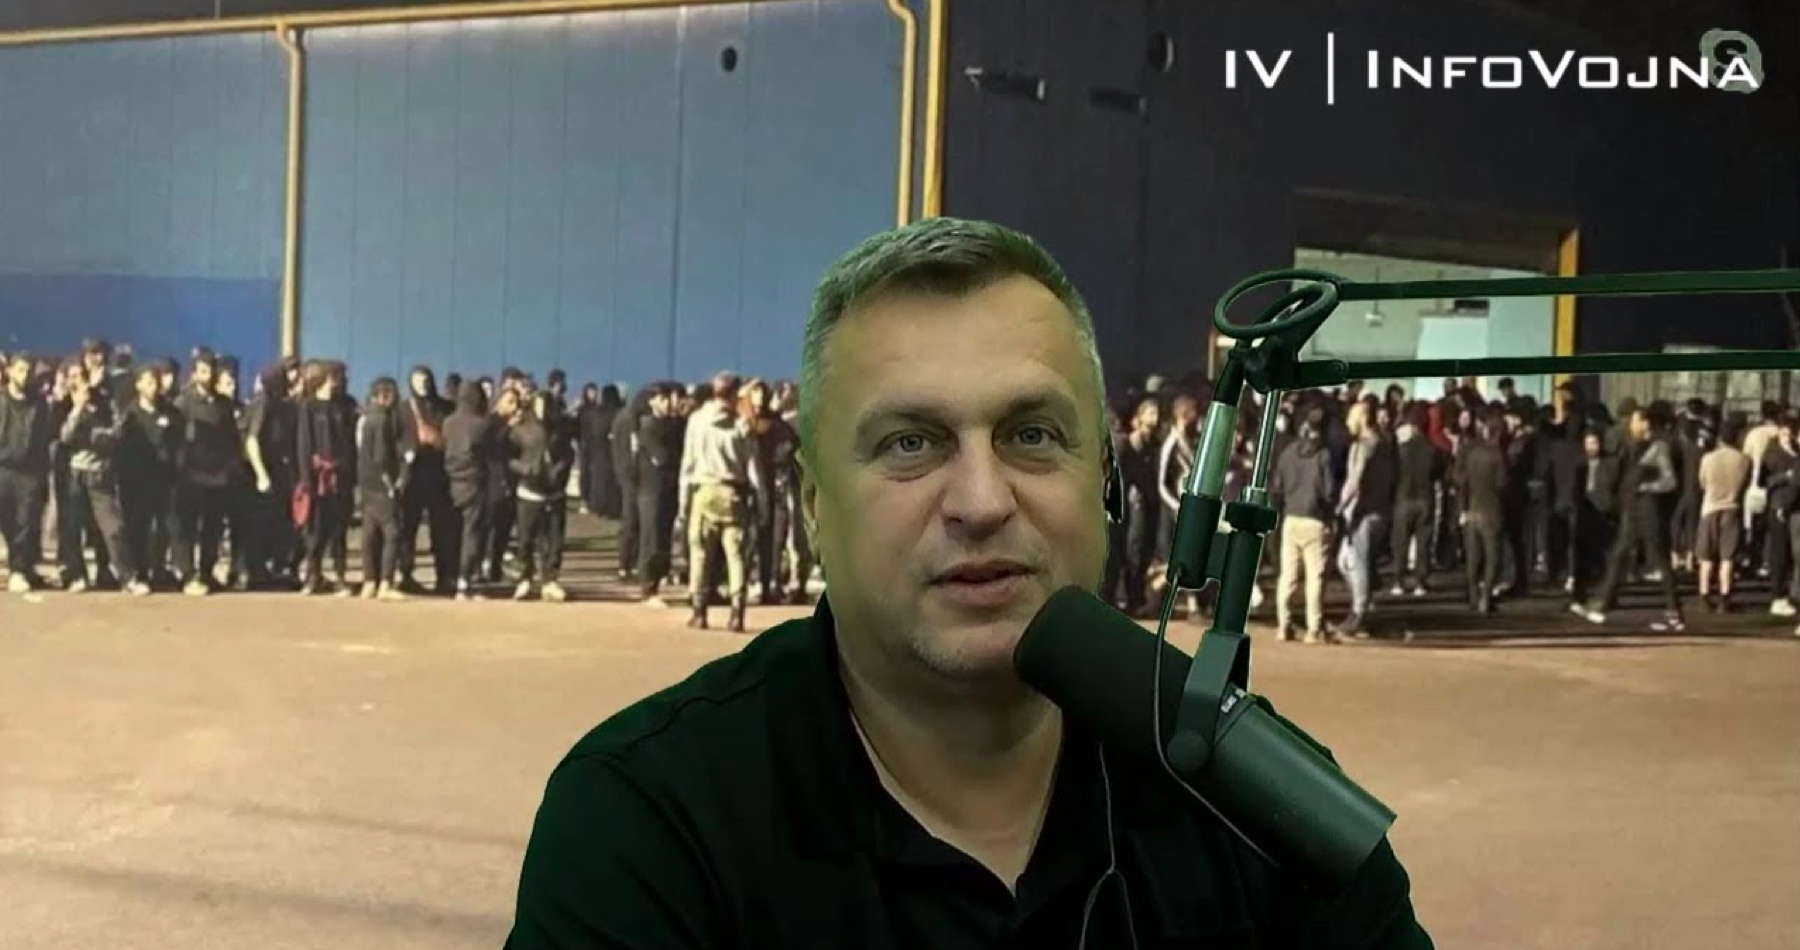 VIDEO: Andrej Danko o súčasnom antidemokratickom Čaputovo-Ódorovom vládnucom režime, progresívcoch, ktorých organizovaná činnosť ide proti záujmom Slovenska & jeho občanov, migračnej kríze a cieľoch SNS po voľbách, ktorá vraj bude načúvať hlasu ľudu a vyvaruje sa chýb minulých